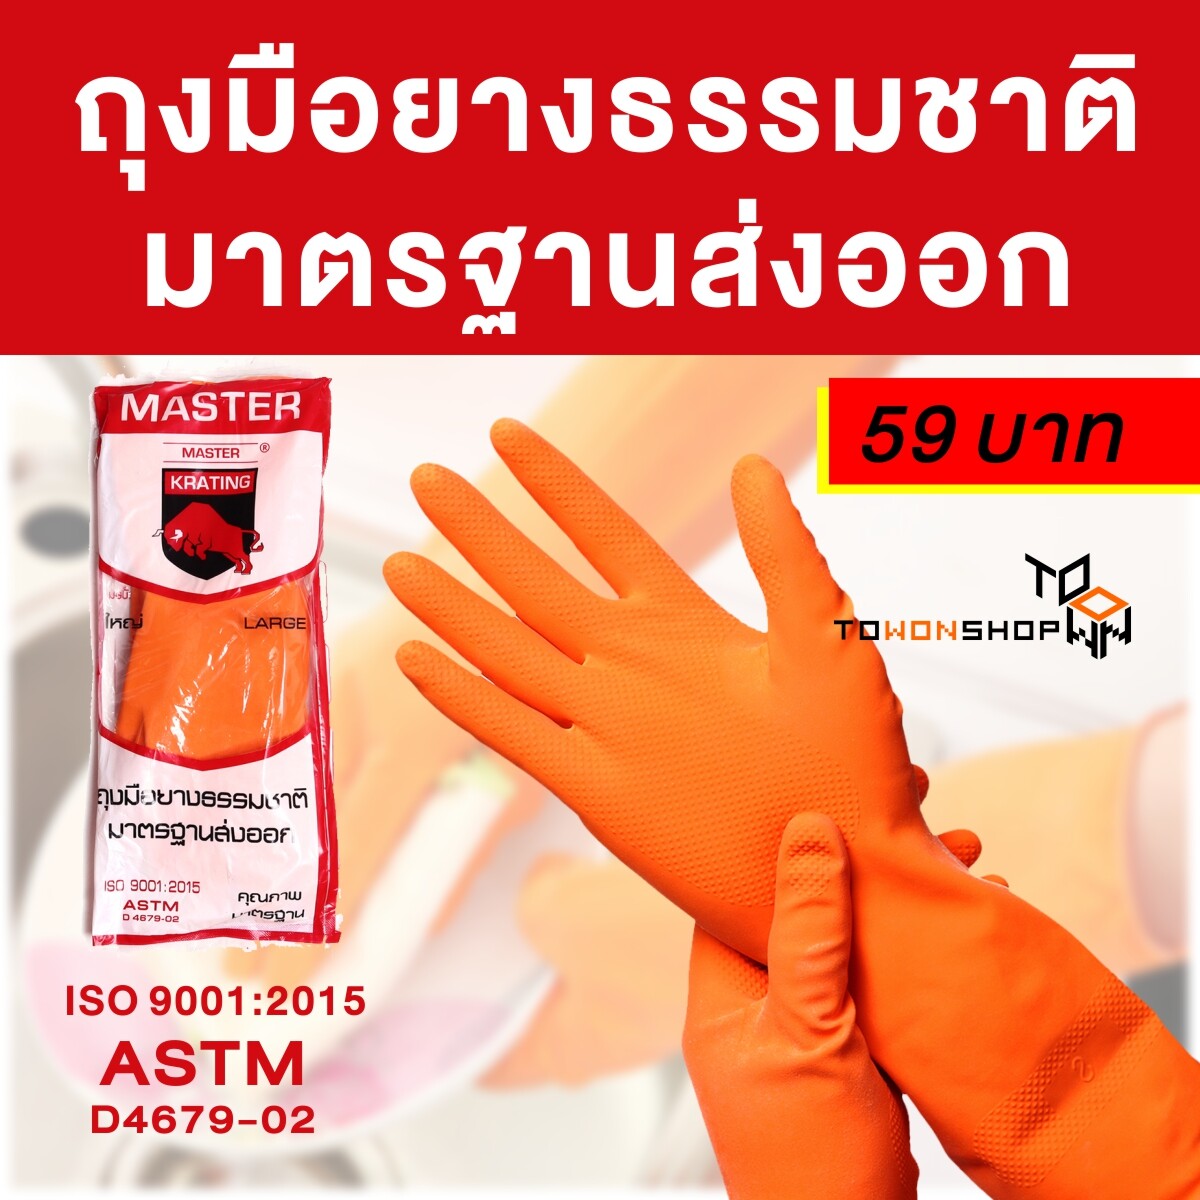 ถุงมือยาง ถุงมือยางแม่บ้าน MASTER Natural Latex Rubber Household Gloves สีส้ม